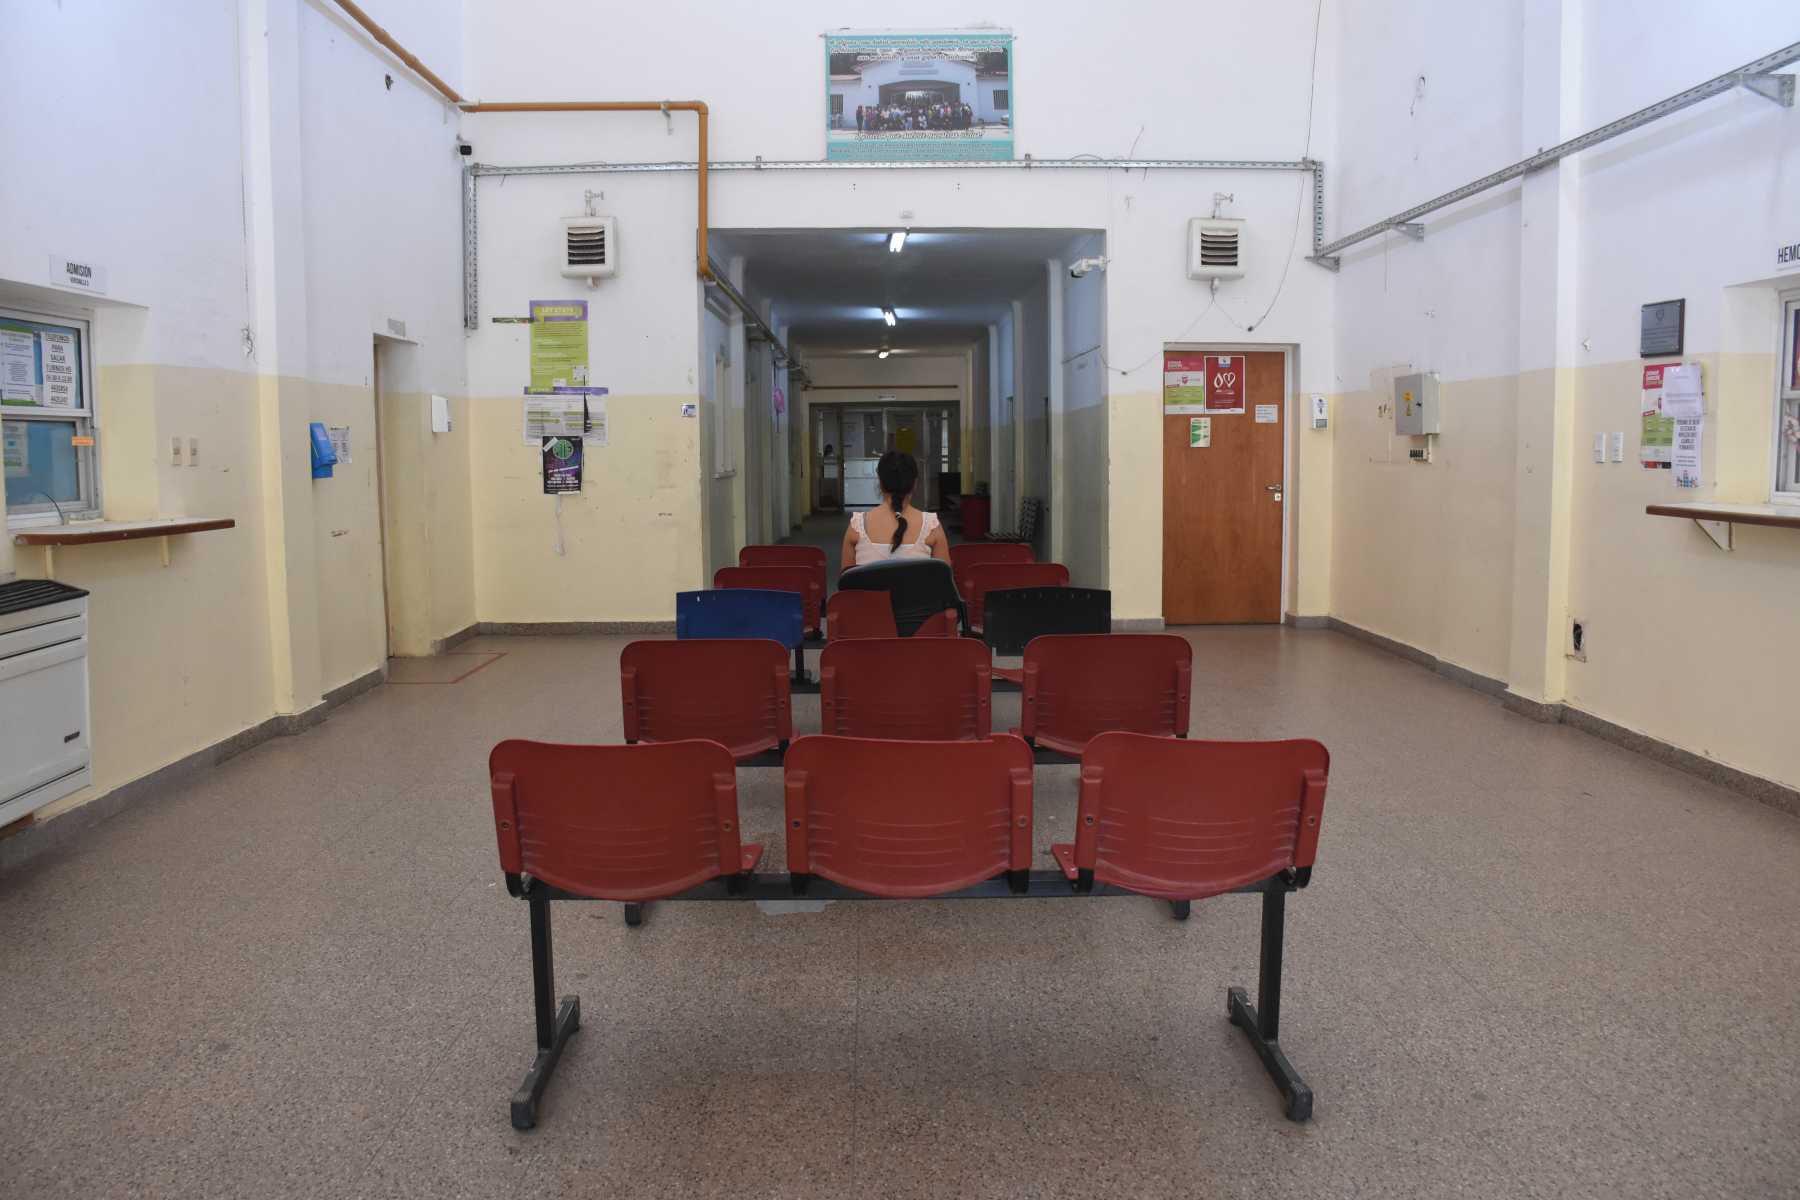 La sala de espera del hospital, donde mujeres esperan una solución. Foto: Alejandro Carnevale. 